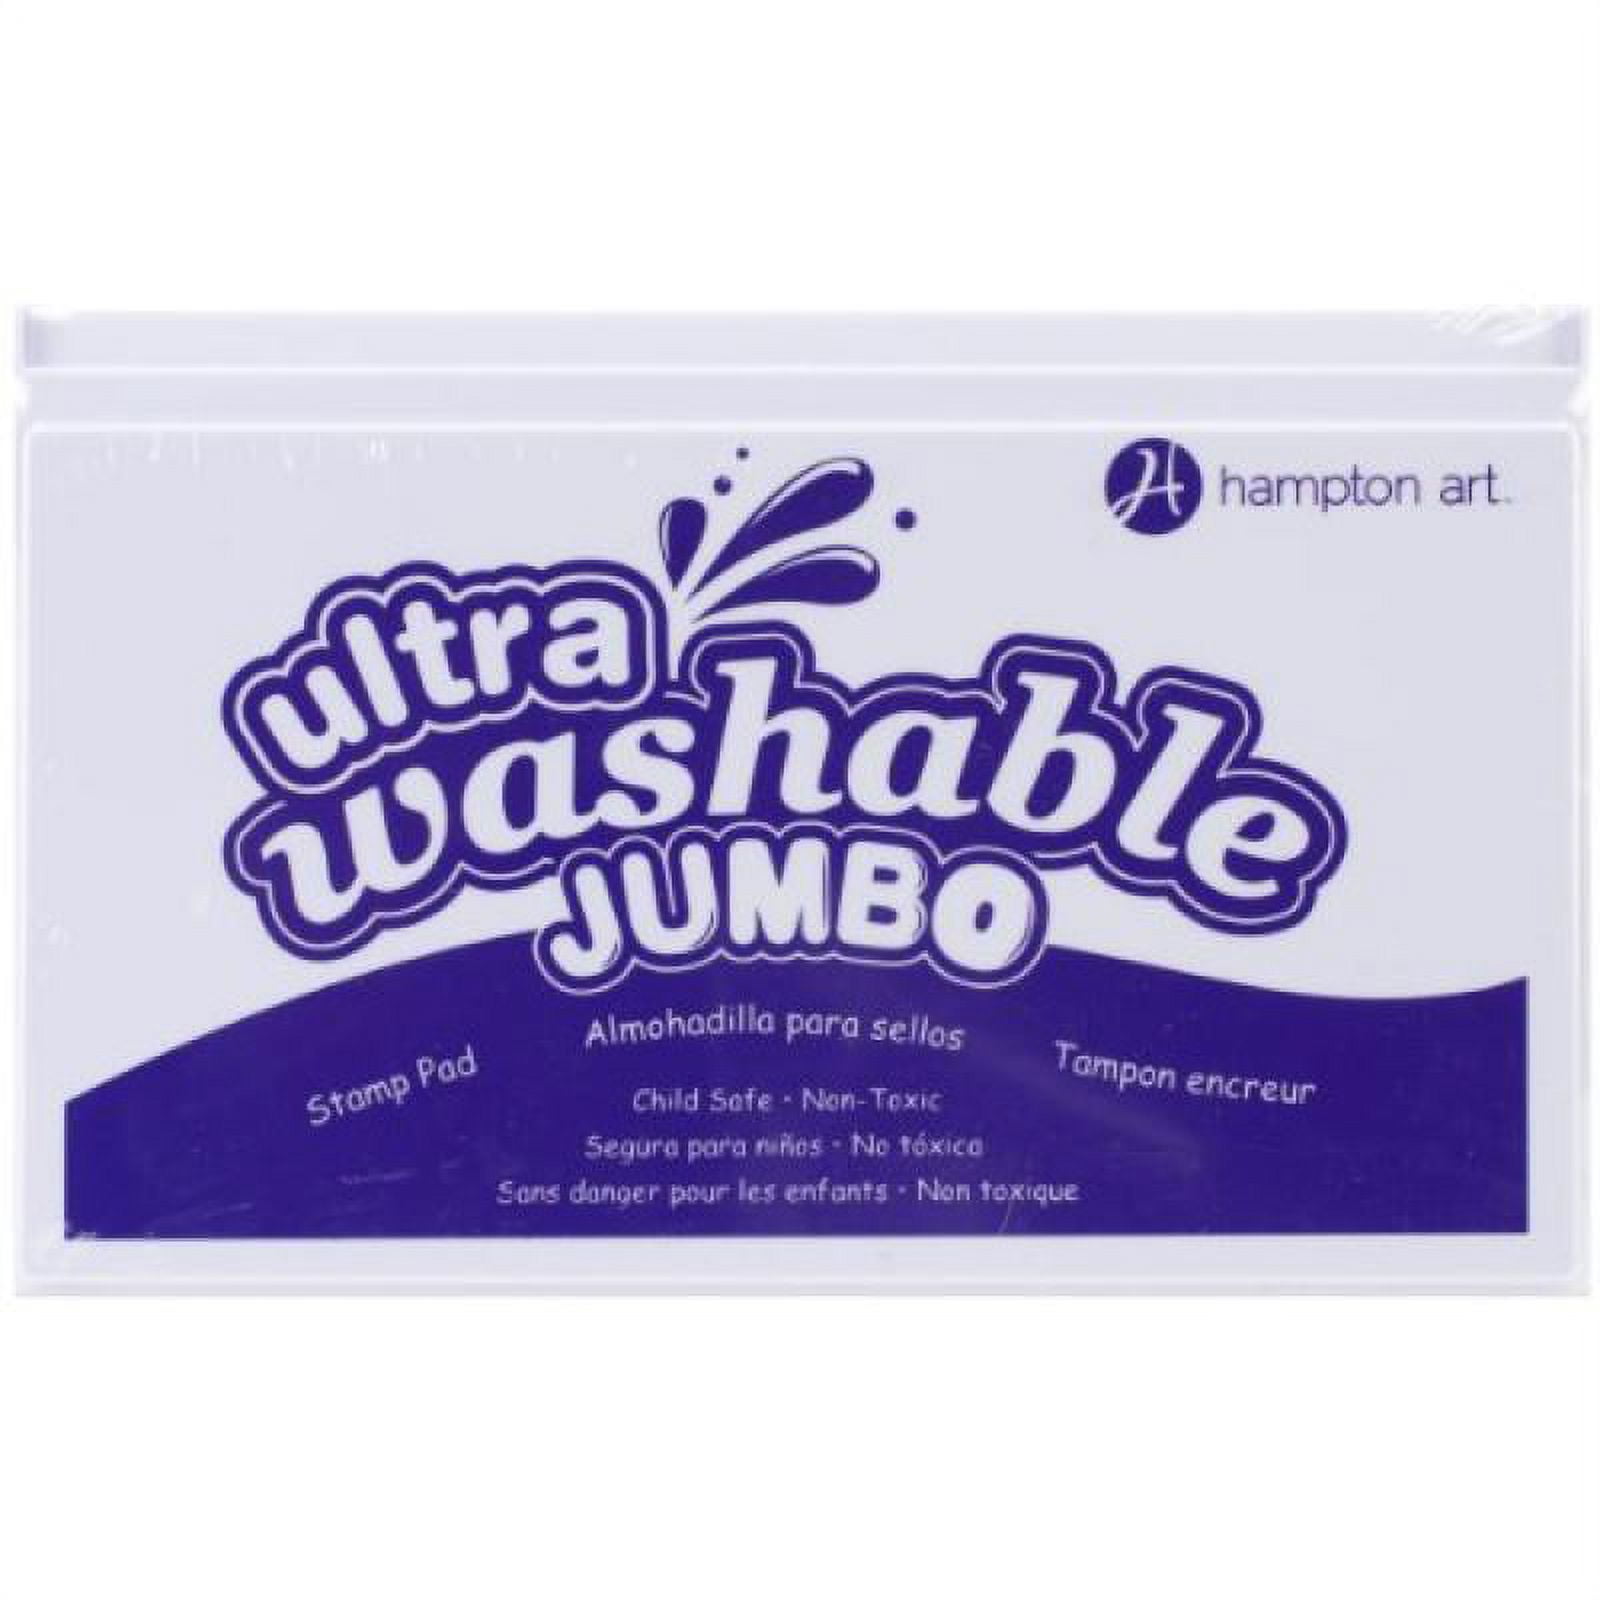 Purple Washable Stamp Pad, Kids Washable Ink Pad, Hampton Art